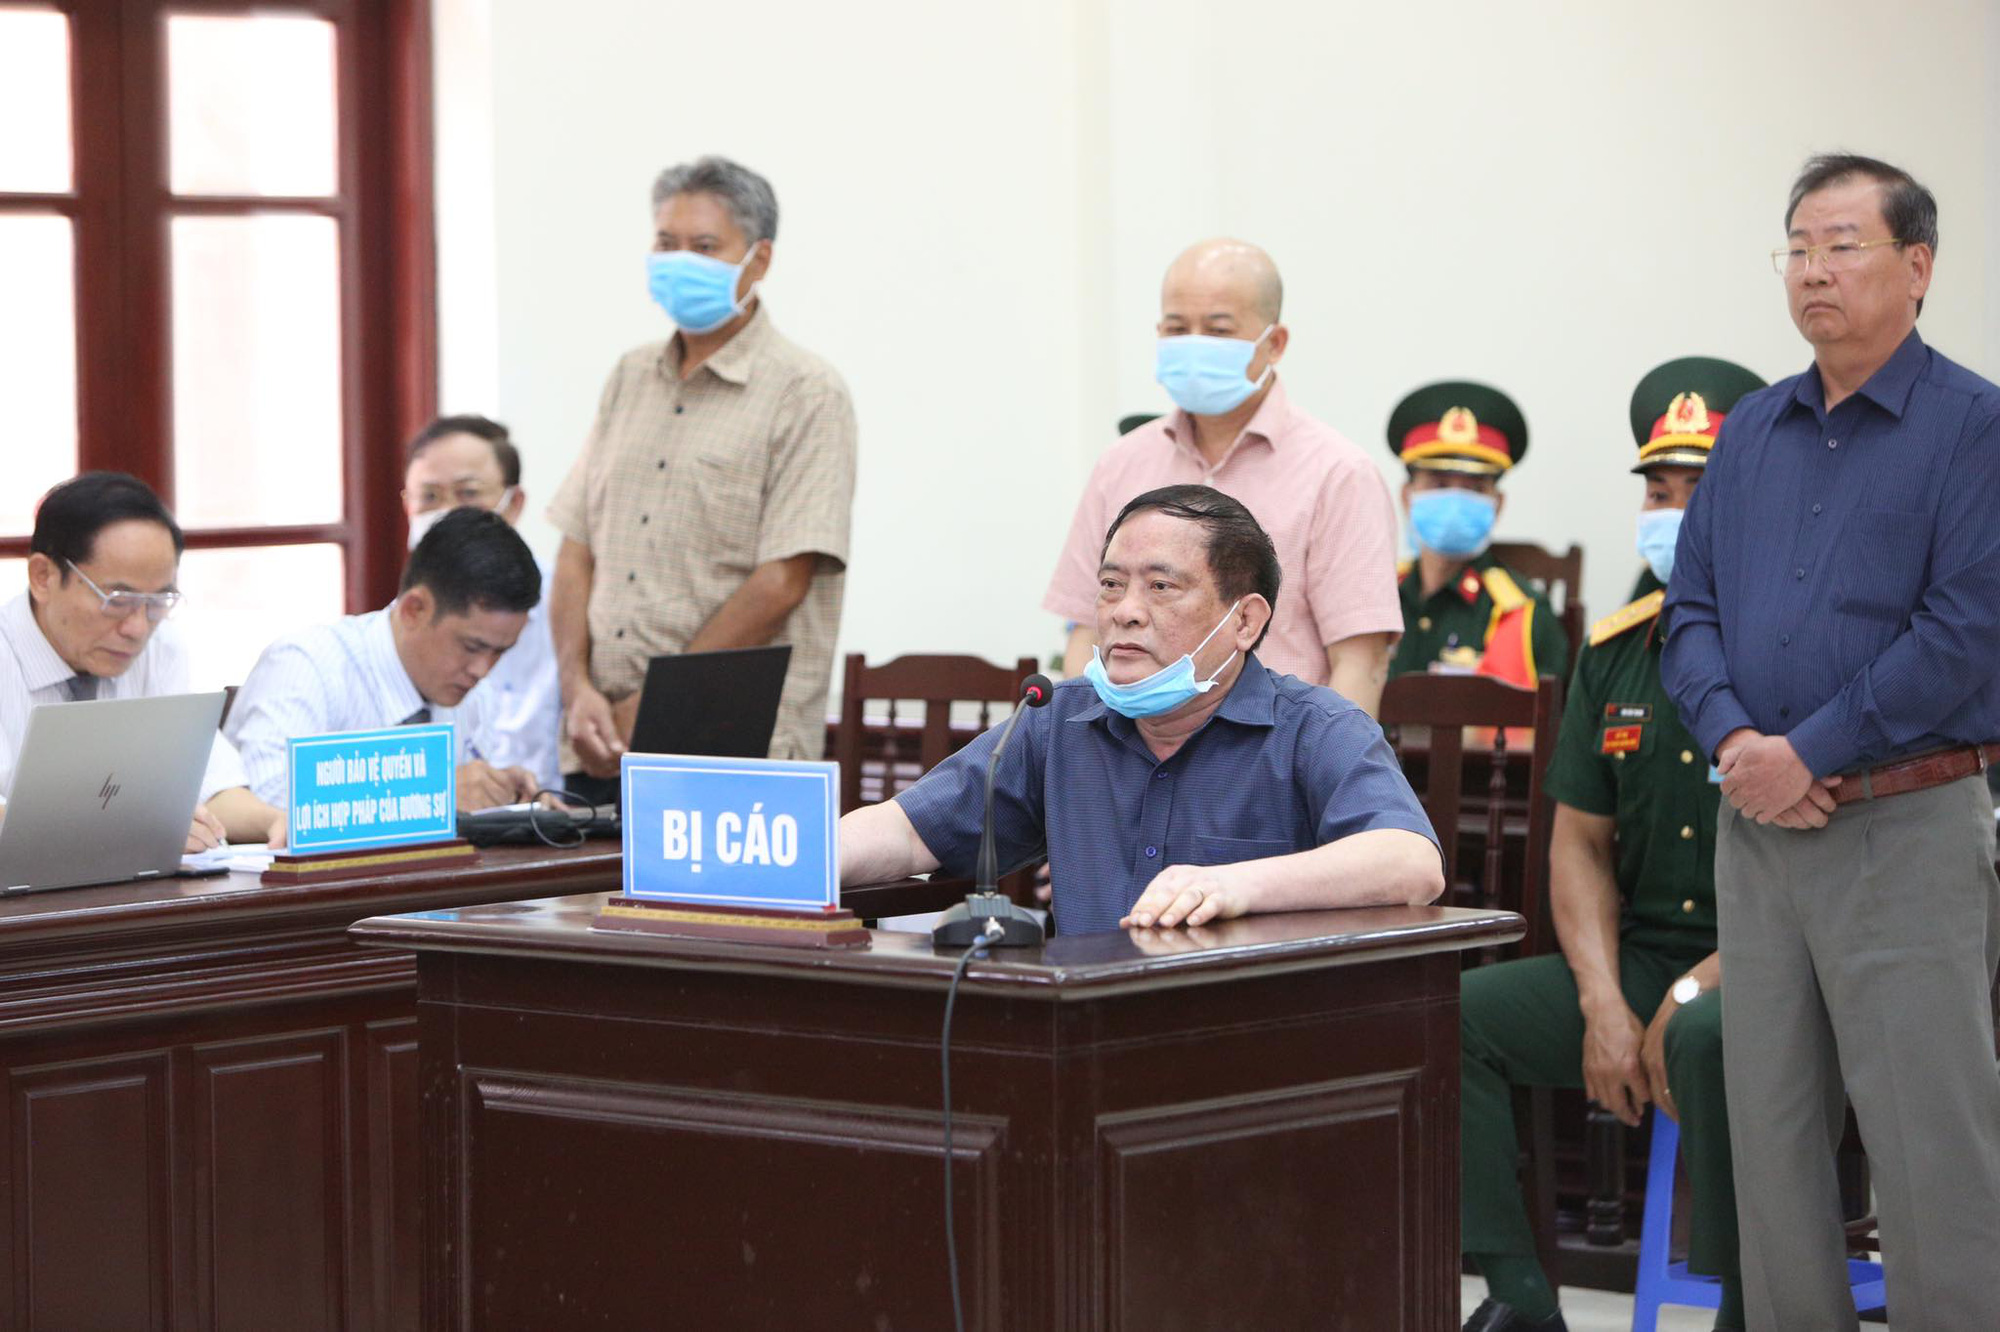 Đô đốc Nguyễn Văn Hiến bị đề nghị mức năm tù - Ảnh 2.